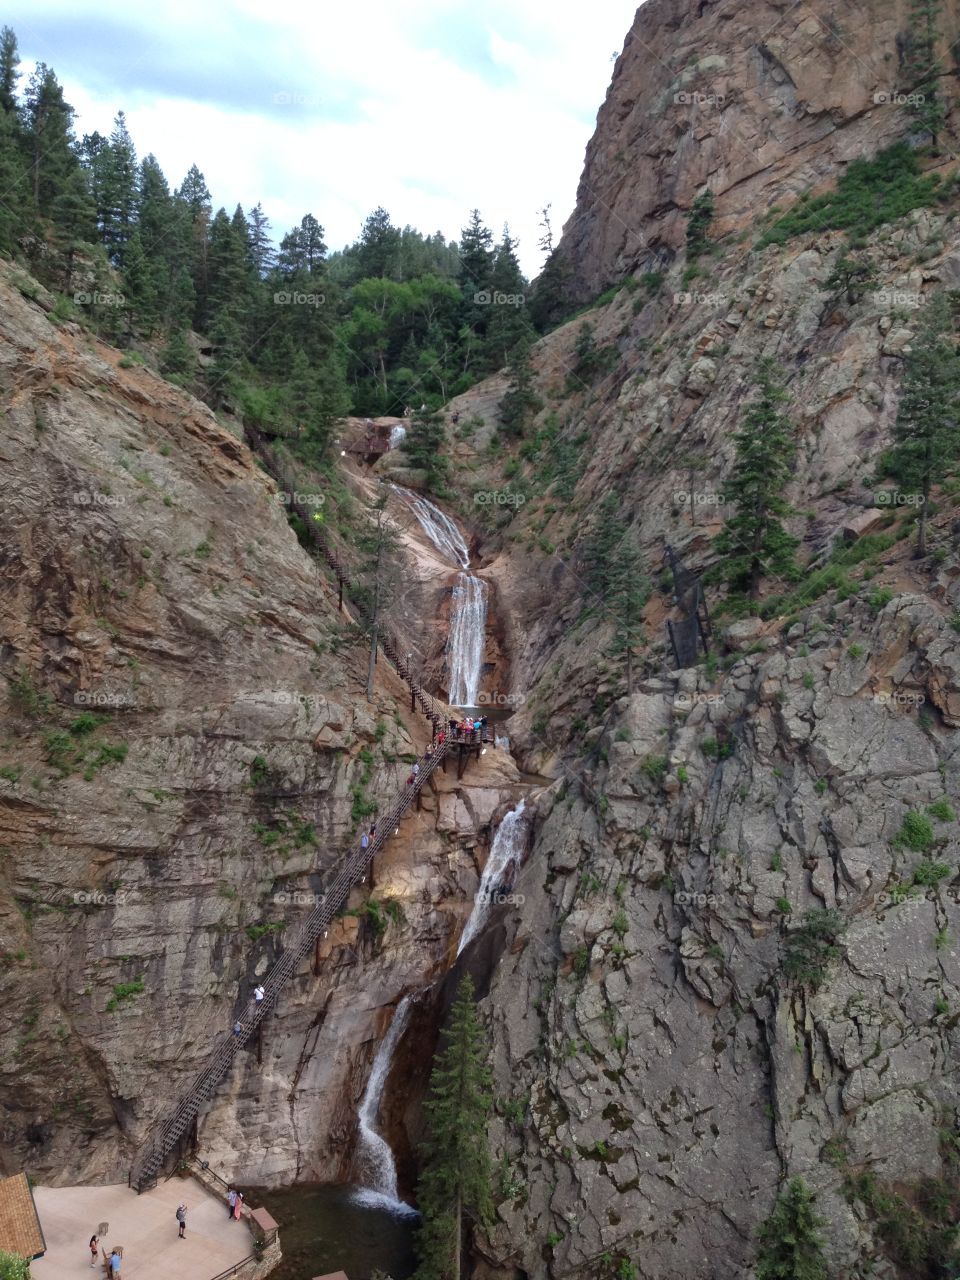 Seven falls Colorado springs